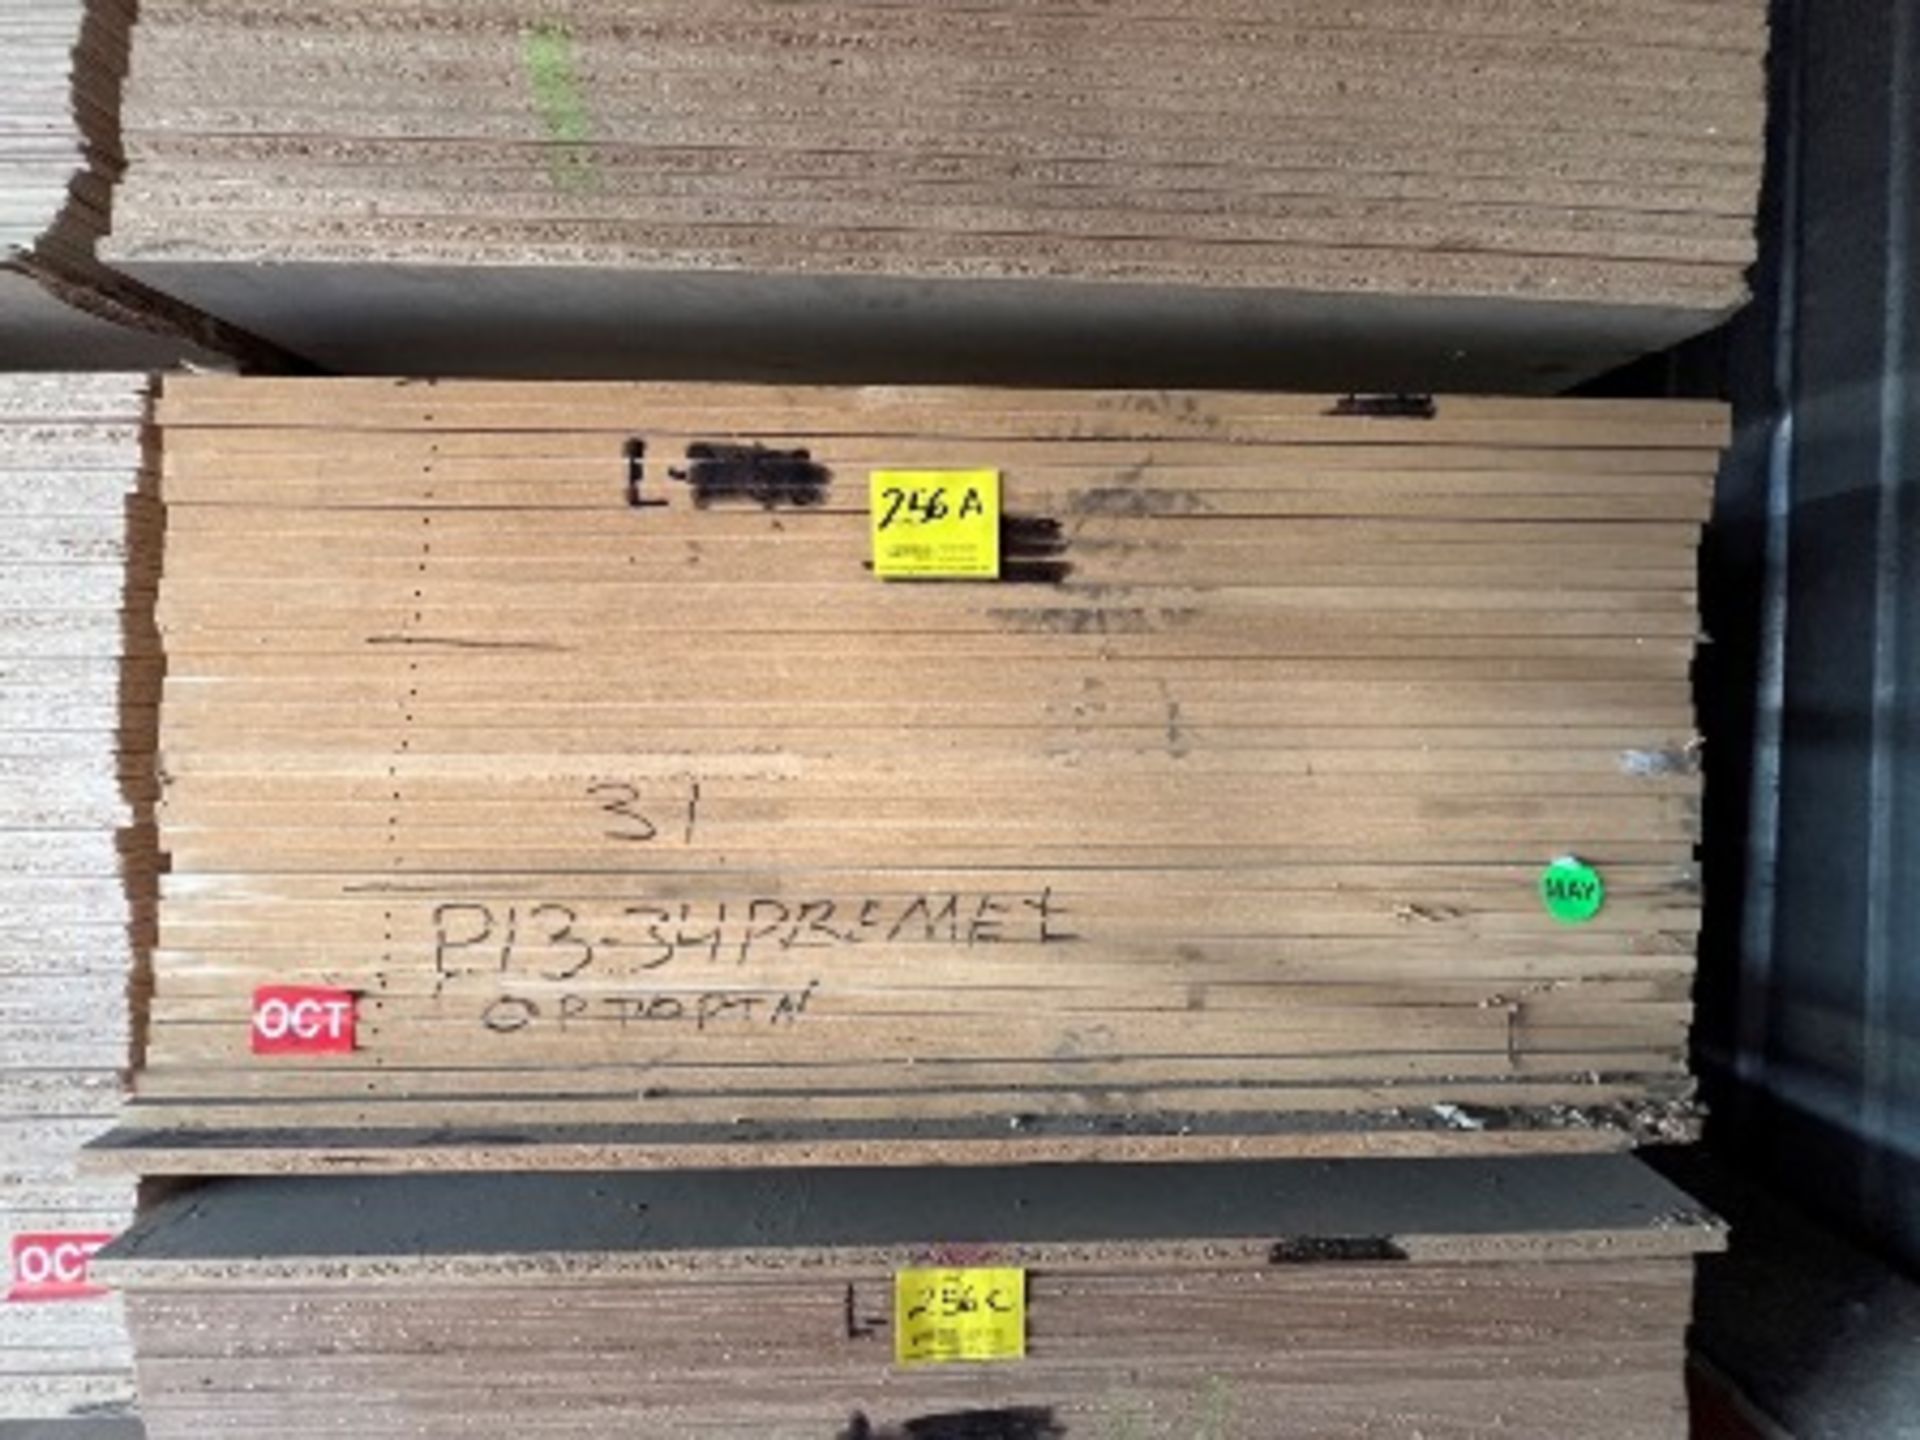 (NUEVO) Lote de 31 piezas de madera contiene: 30 piezas en material 3/4 MDF medida 4 x 8 ft; 1 piez